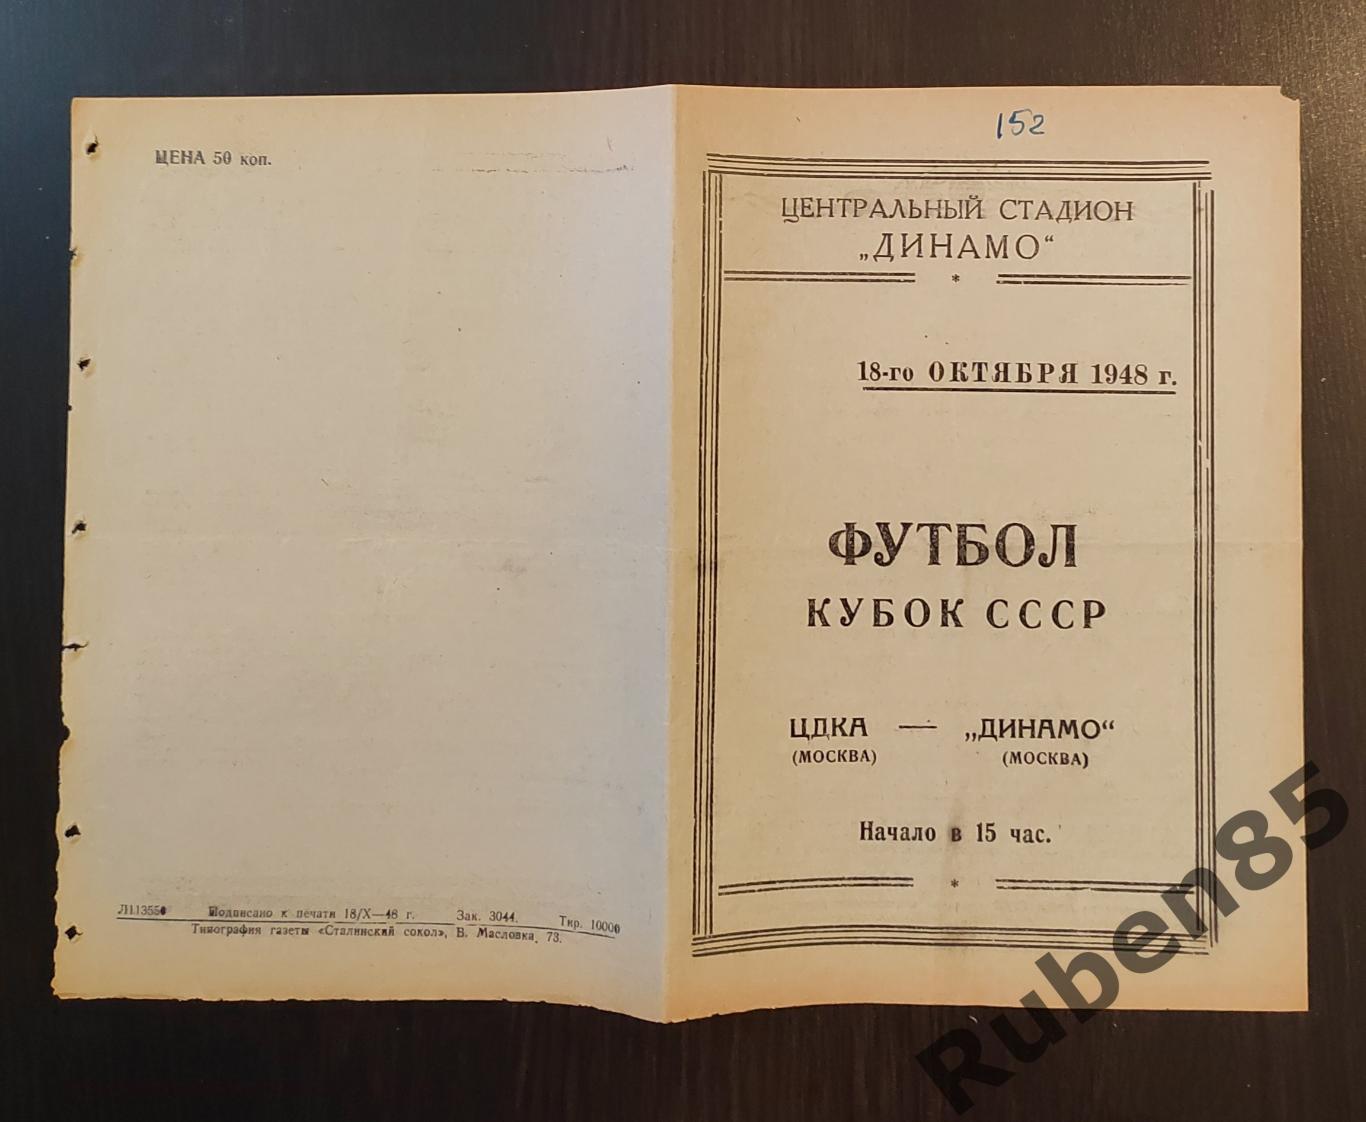 Программа Динамо Москва - ЦДКА 18.10 1948 ПЕРЕИГРОВКА кубок ЦСКА 1